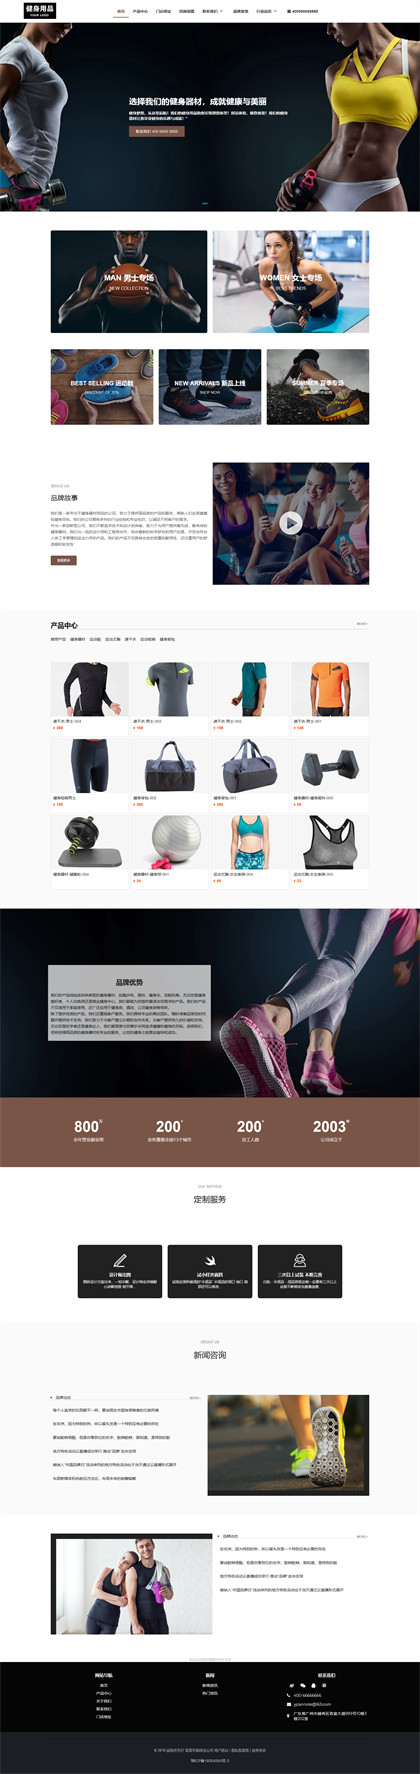 健身器材-健身用品-健身设备-运动用品-运动器材网站模板网站模板图片